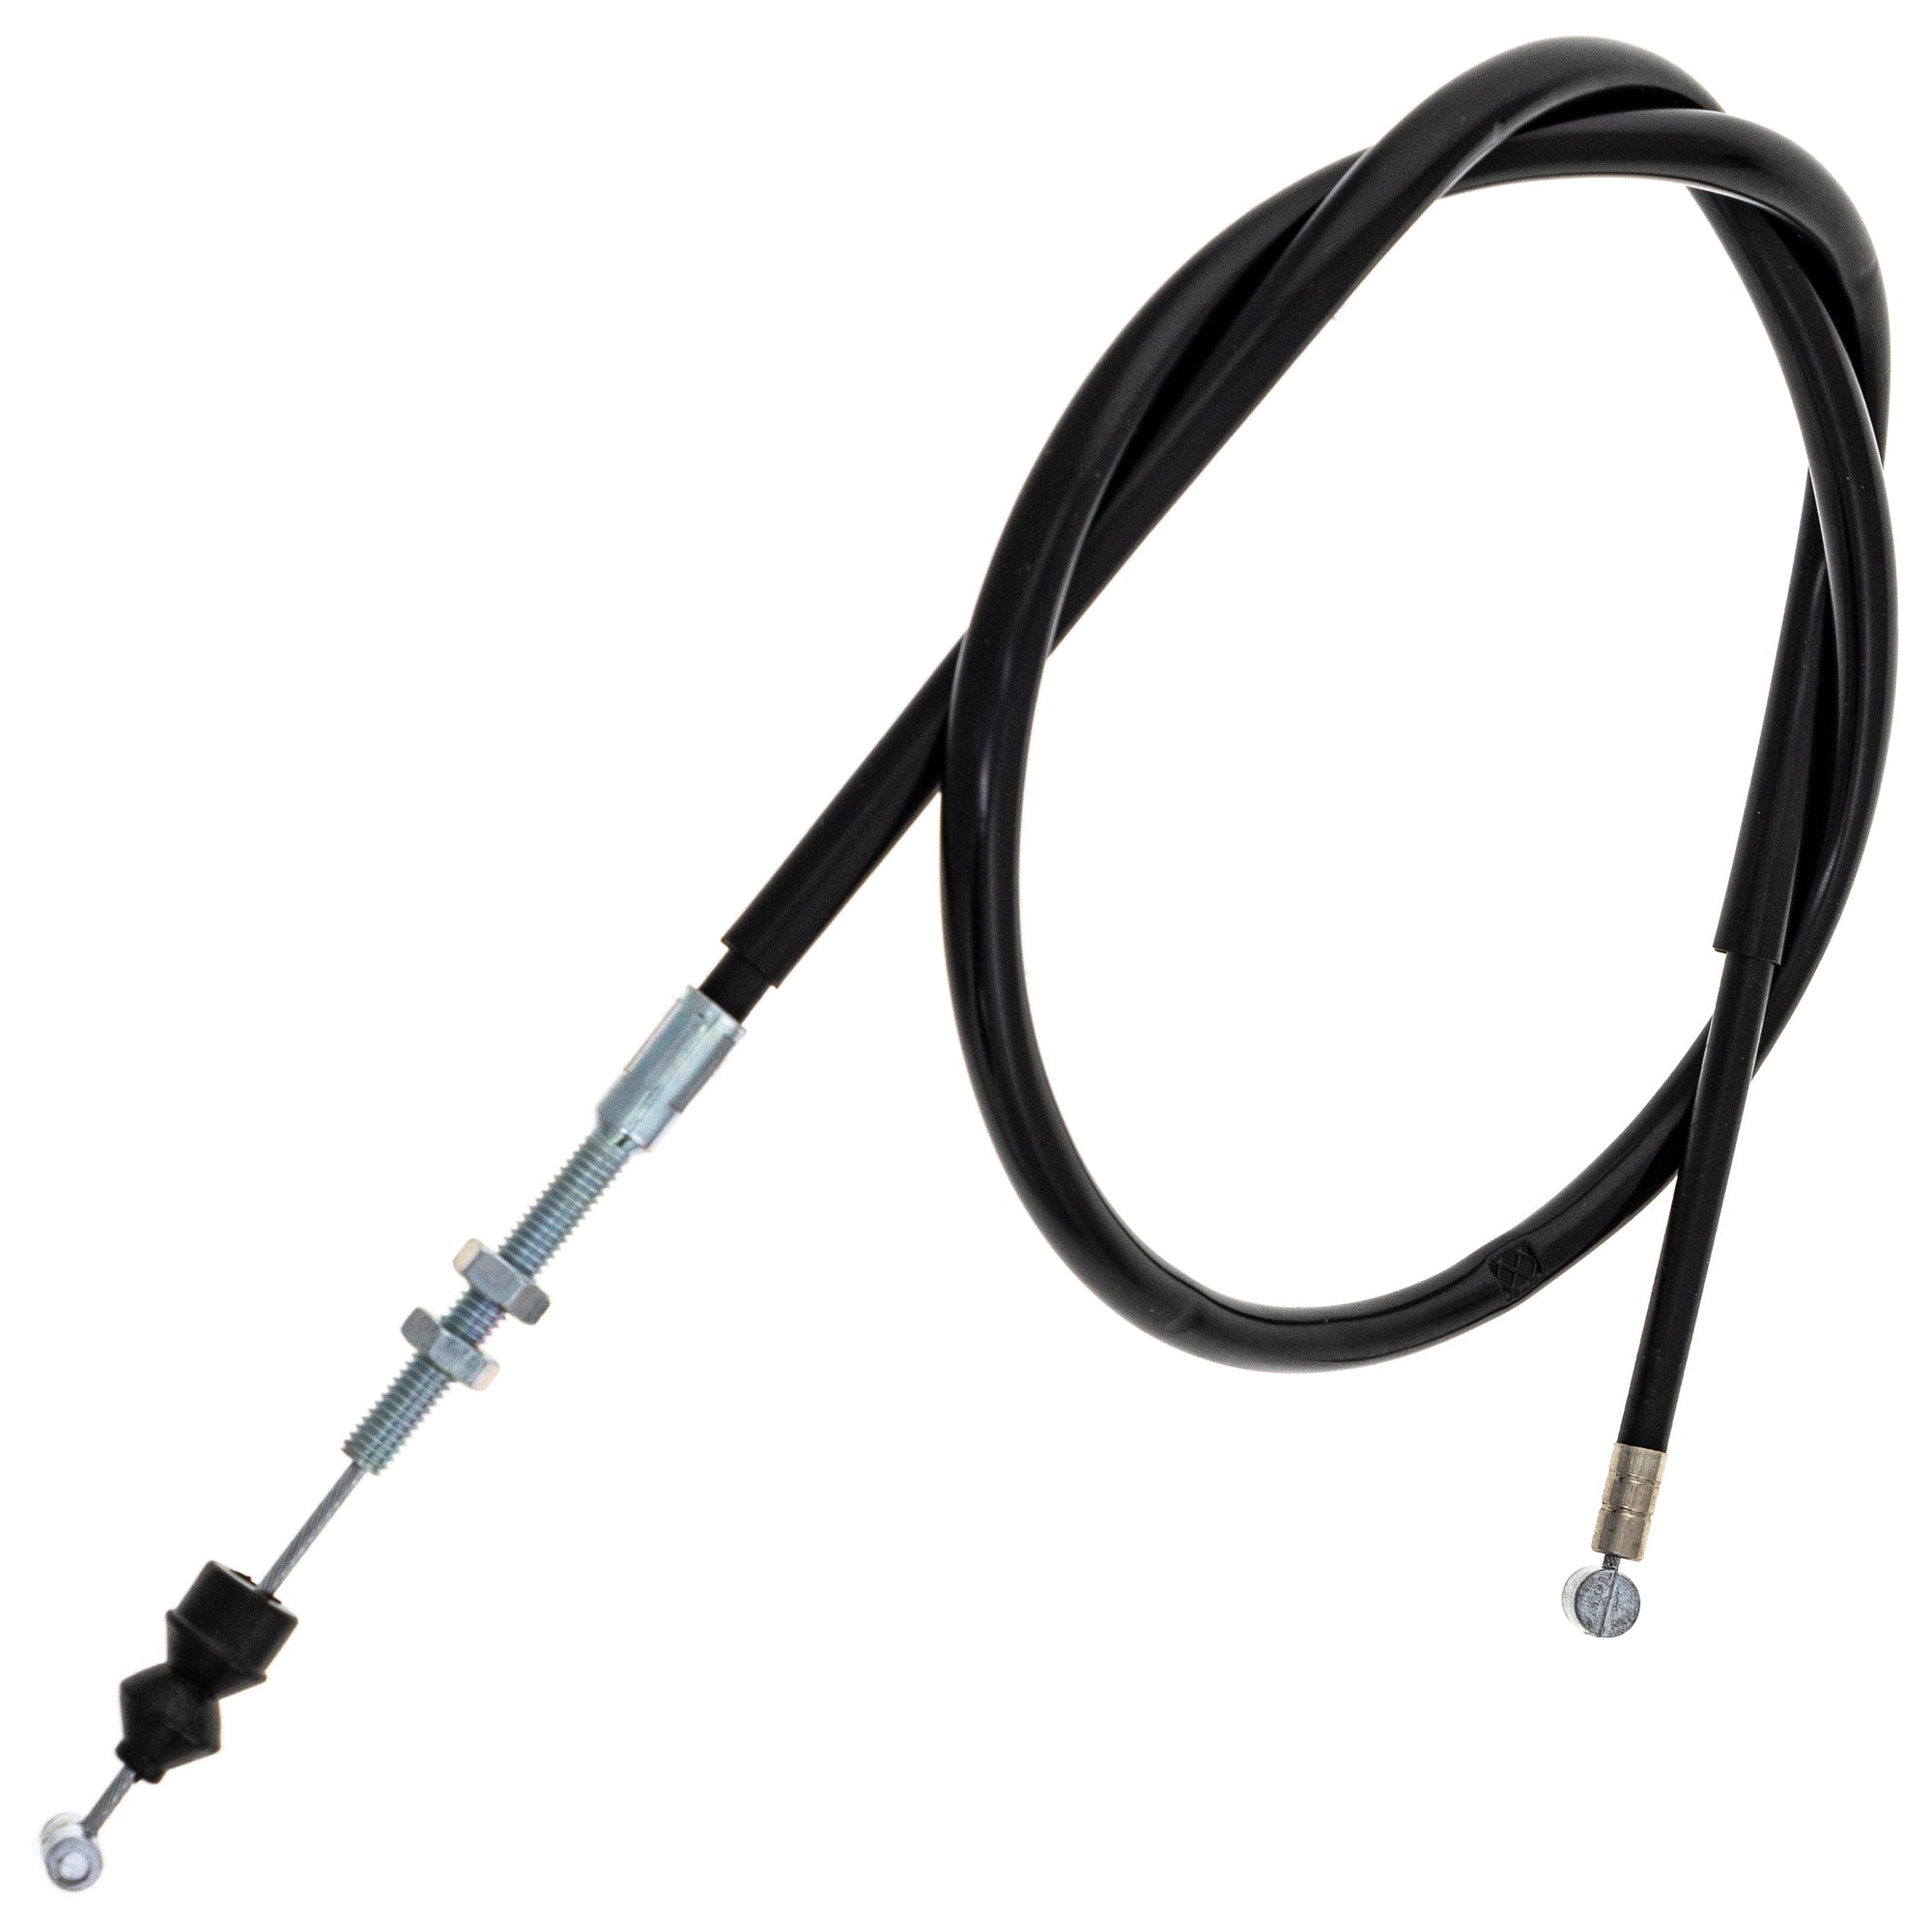 Clutch Cable for Kawasaki Suzuki KX65 RM65 54011-1415 K5401-11415